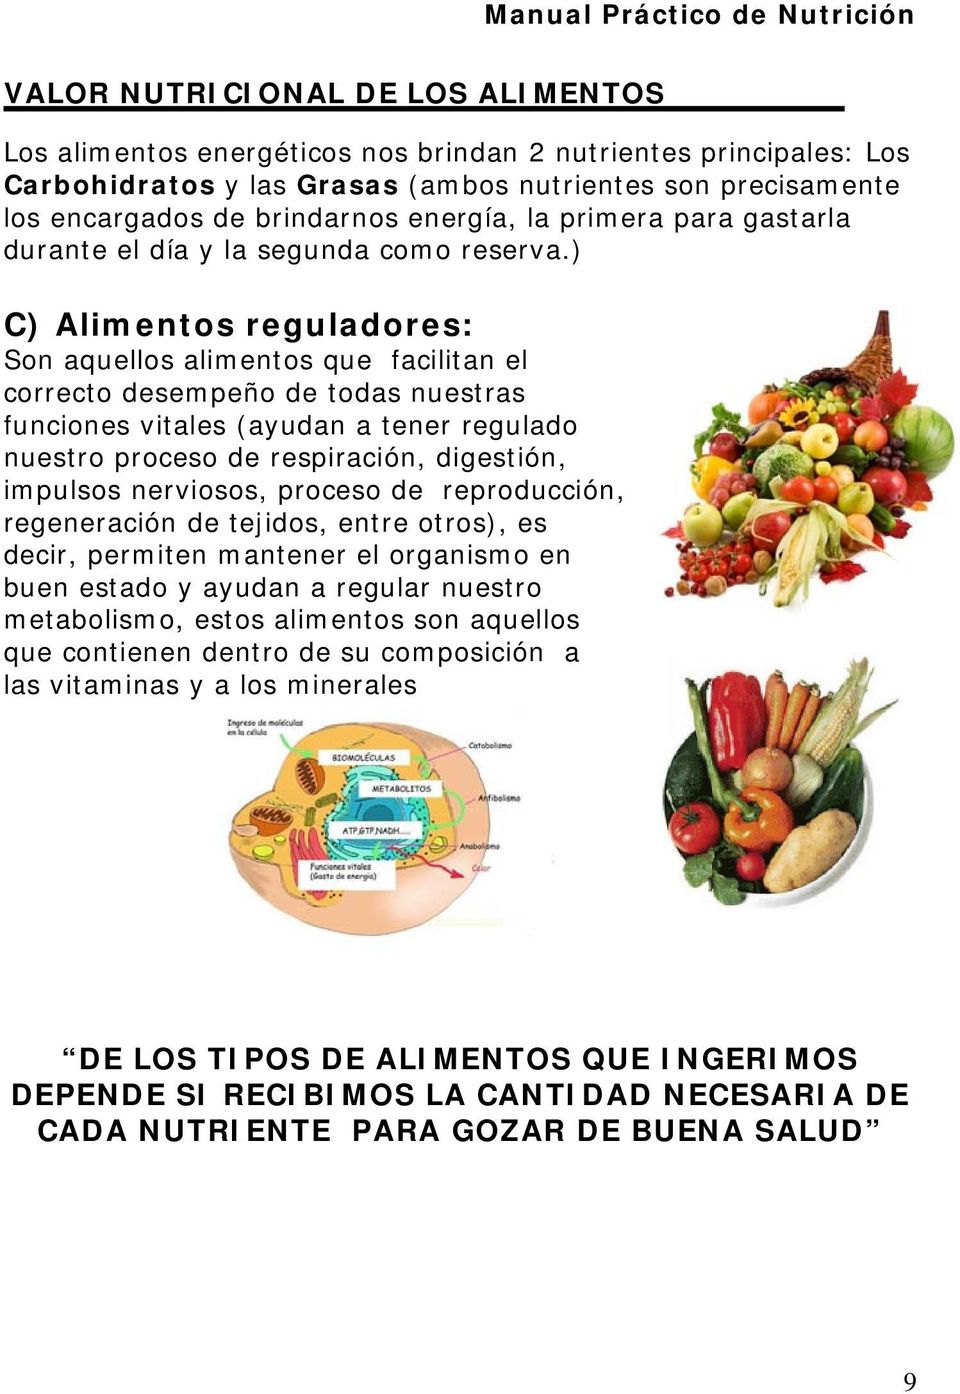 ) C) Alimentos reguladores: Son aquellos alimentos que facilitan el correcto desempeño de todas nuestras funciones vitales (ayudan a tener regulado nuestro proceso de respiración, digestión, impulsos